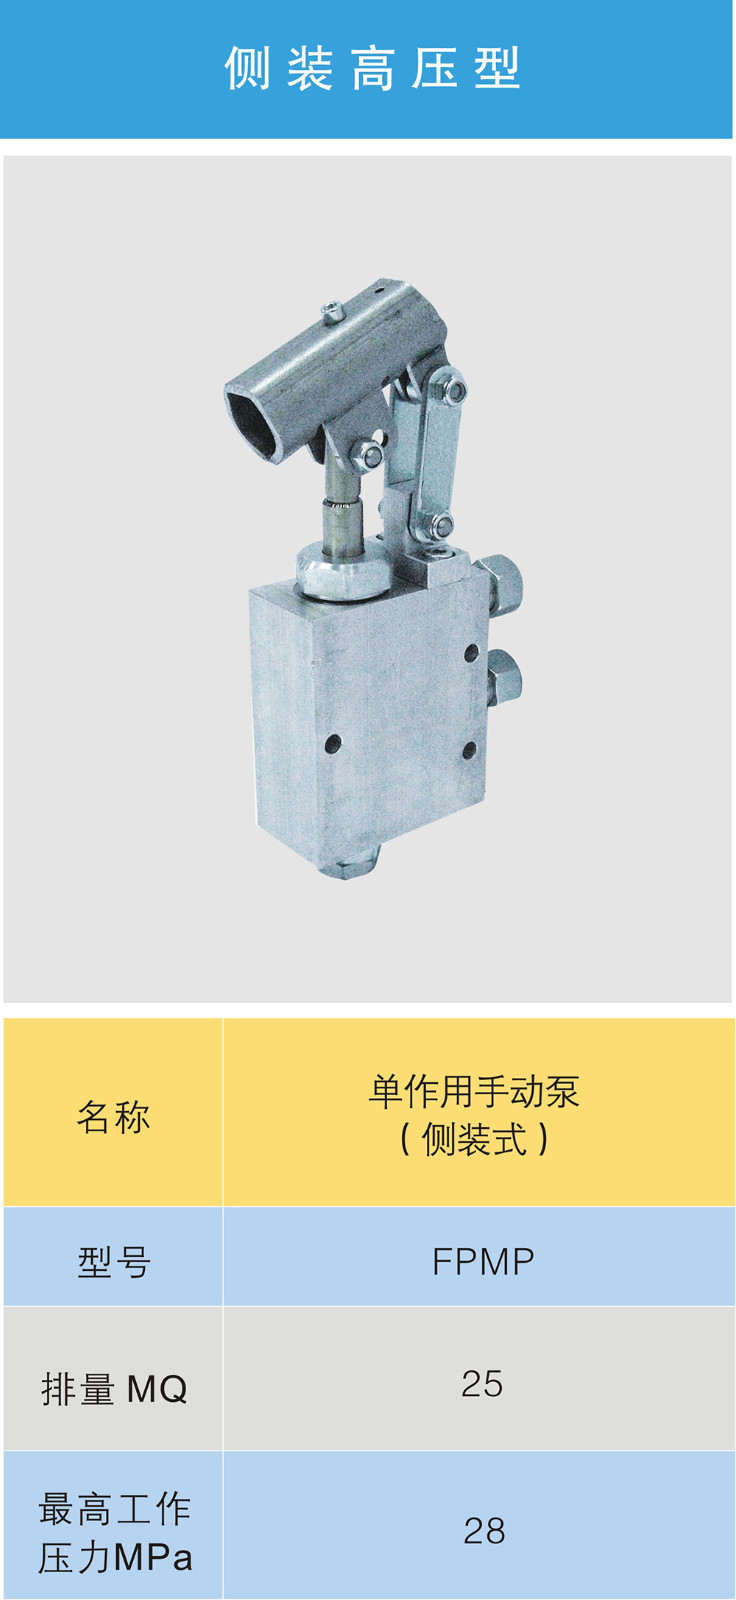 侧装高压型单作用手动泵2.jpg